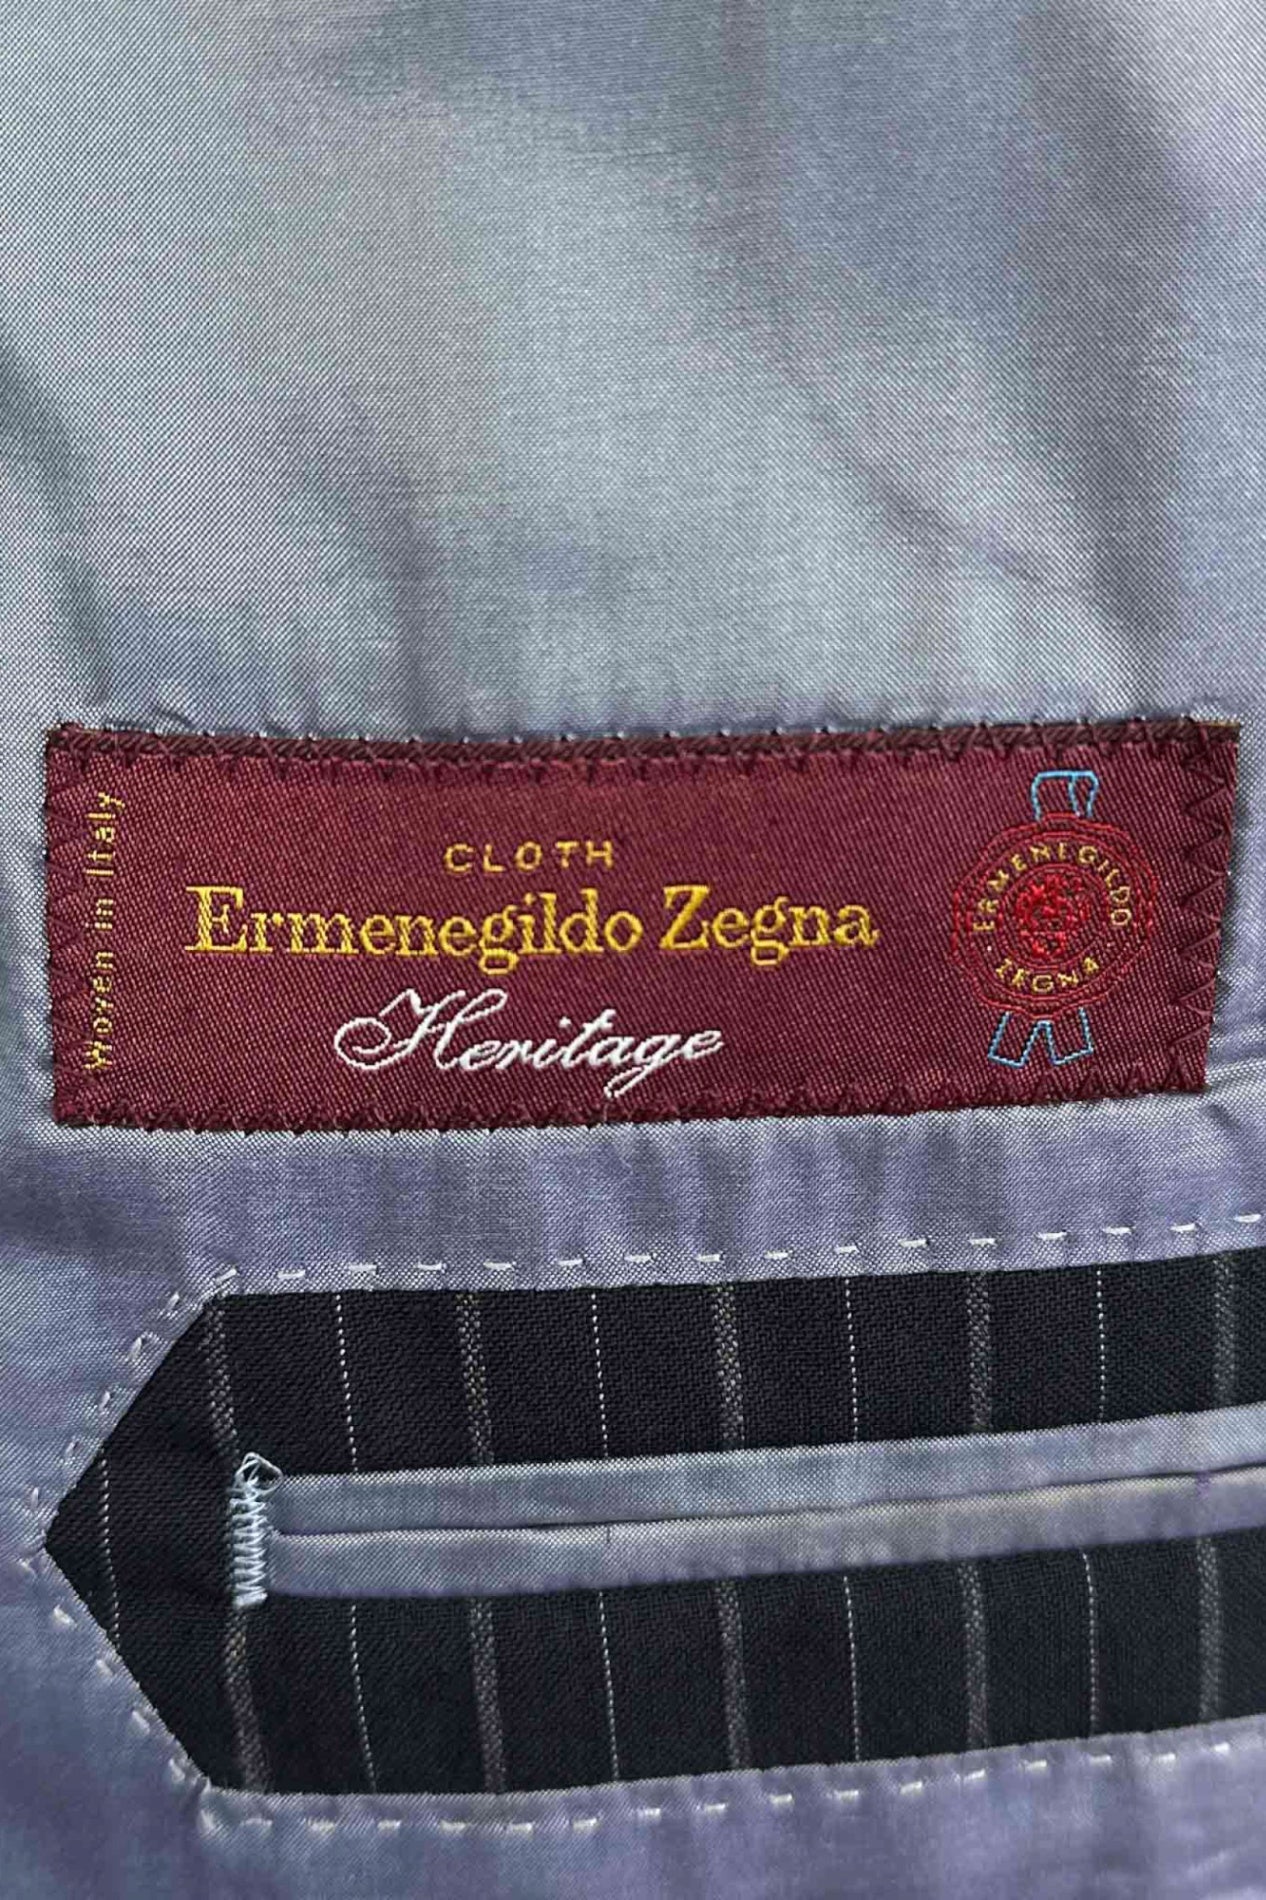 意大利制造 Ermenegildo Zegna 成立